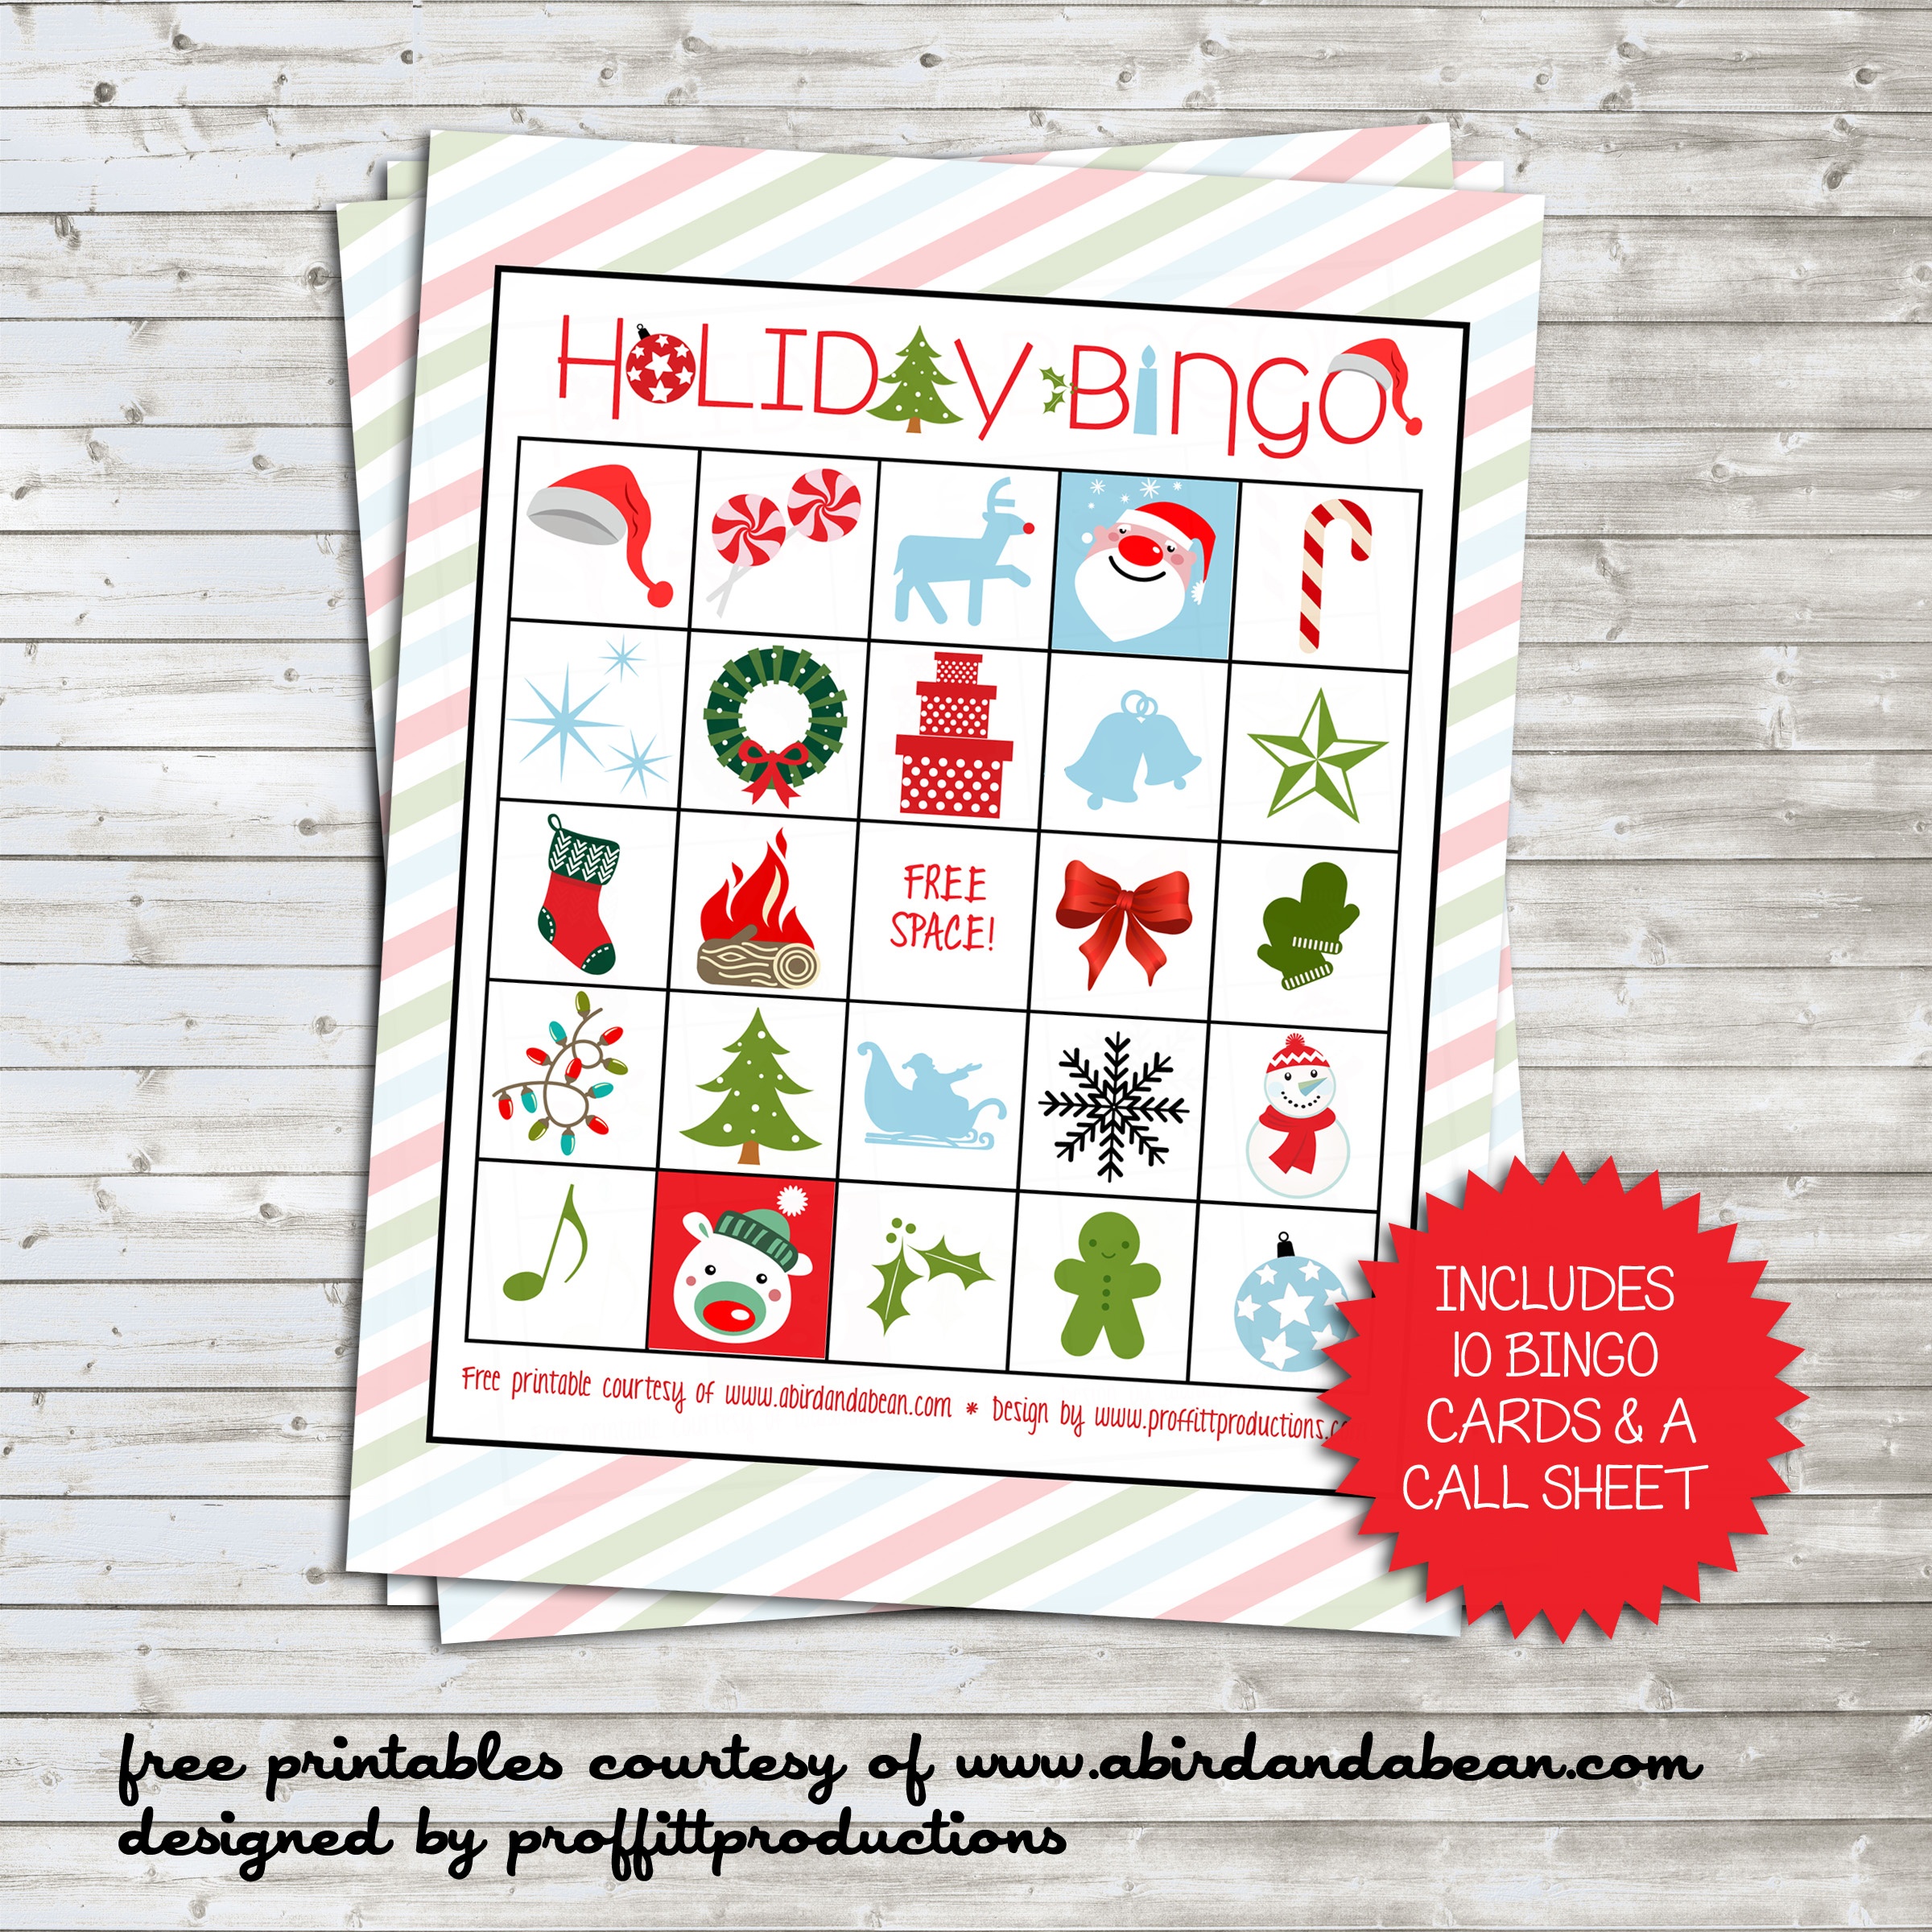 Holiday Bingo Set :: Free Printable - Free Printable Bingo Cards And Call Sheet